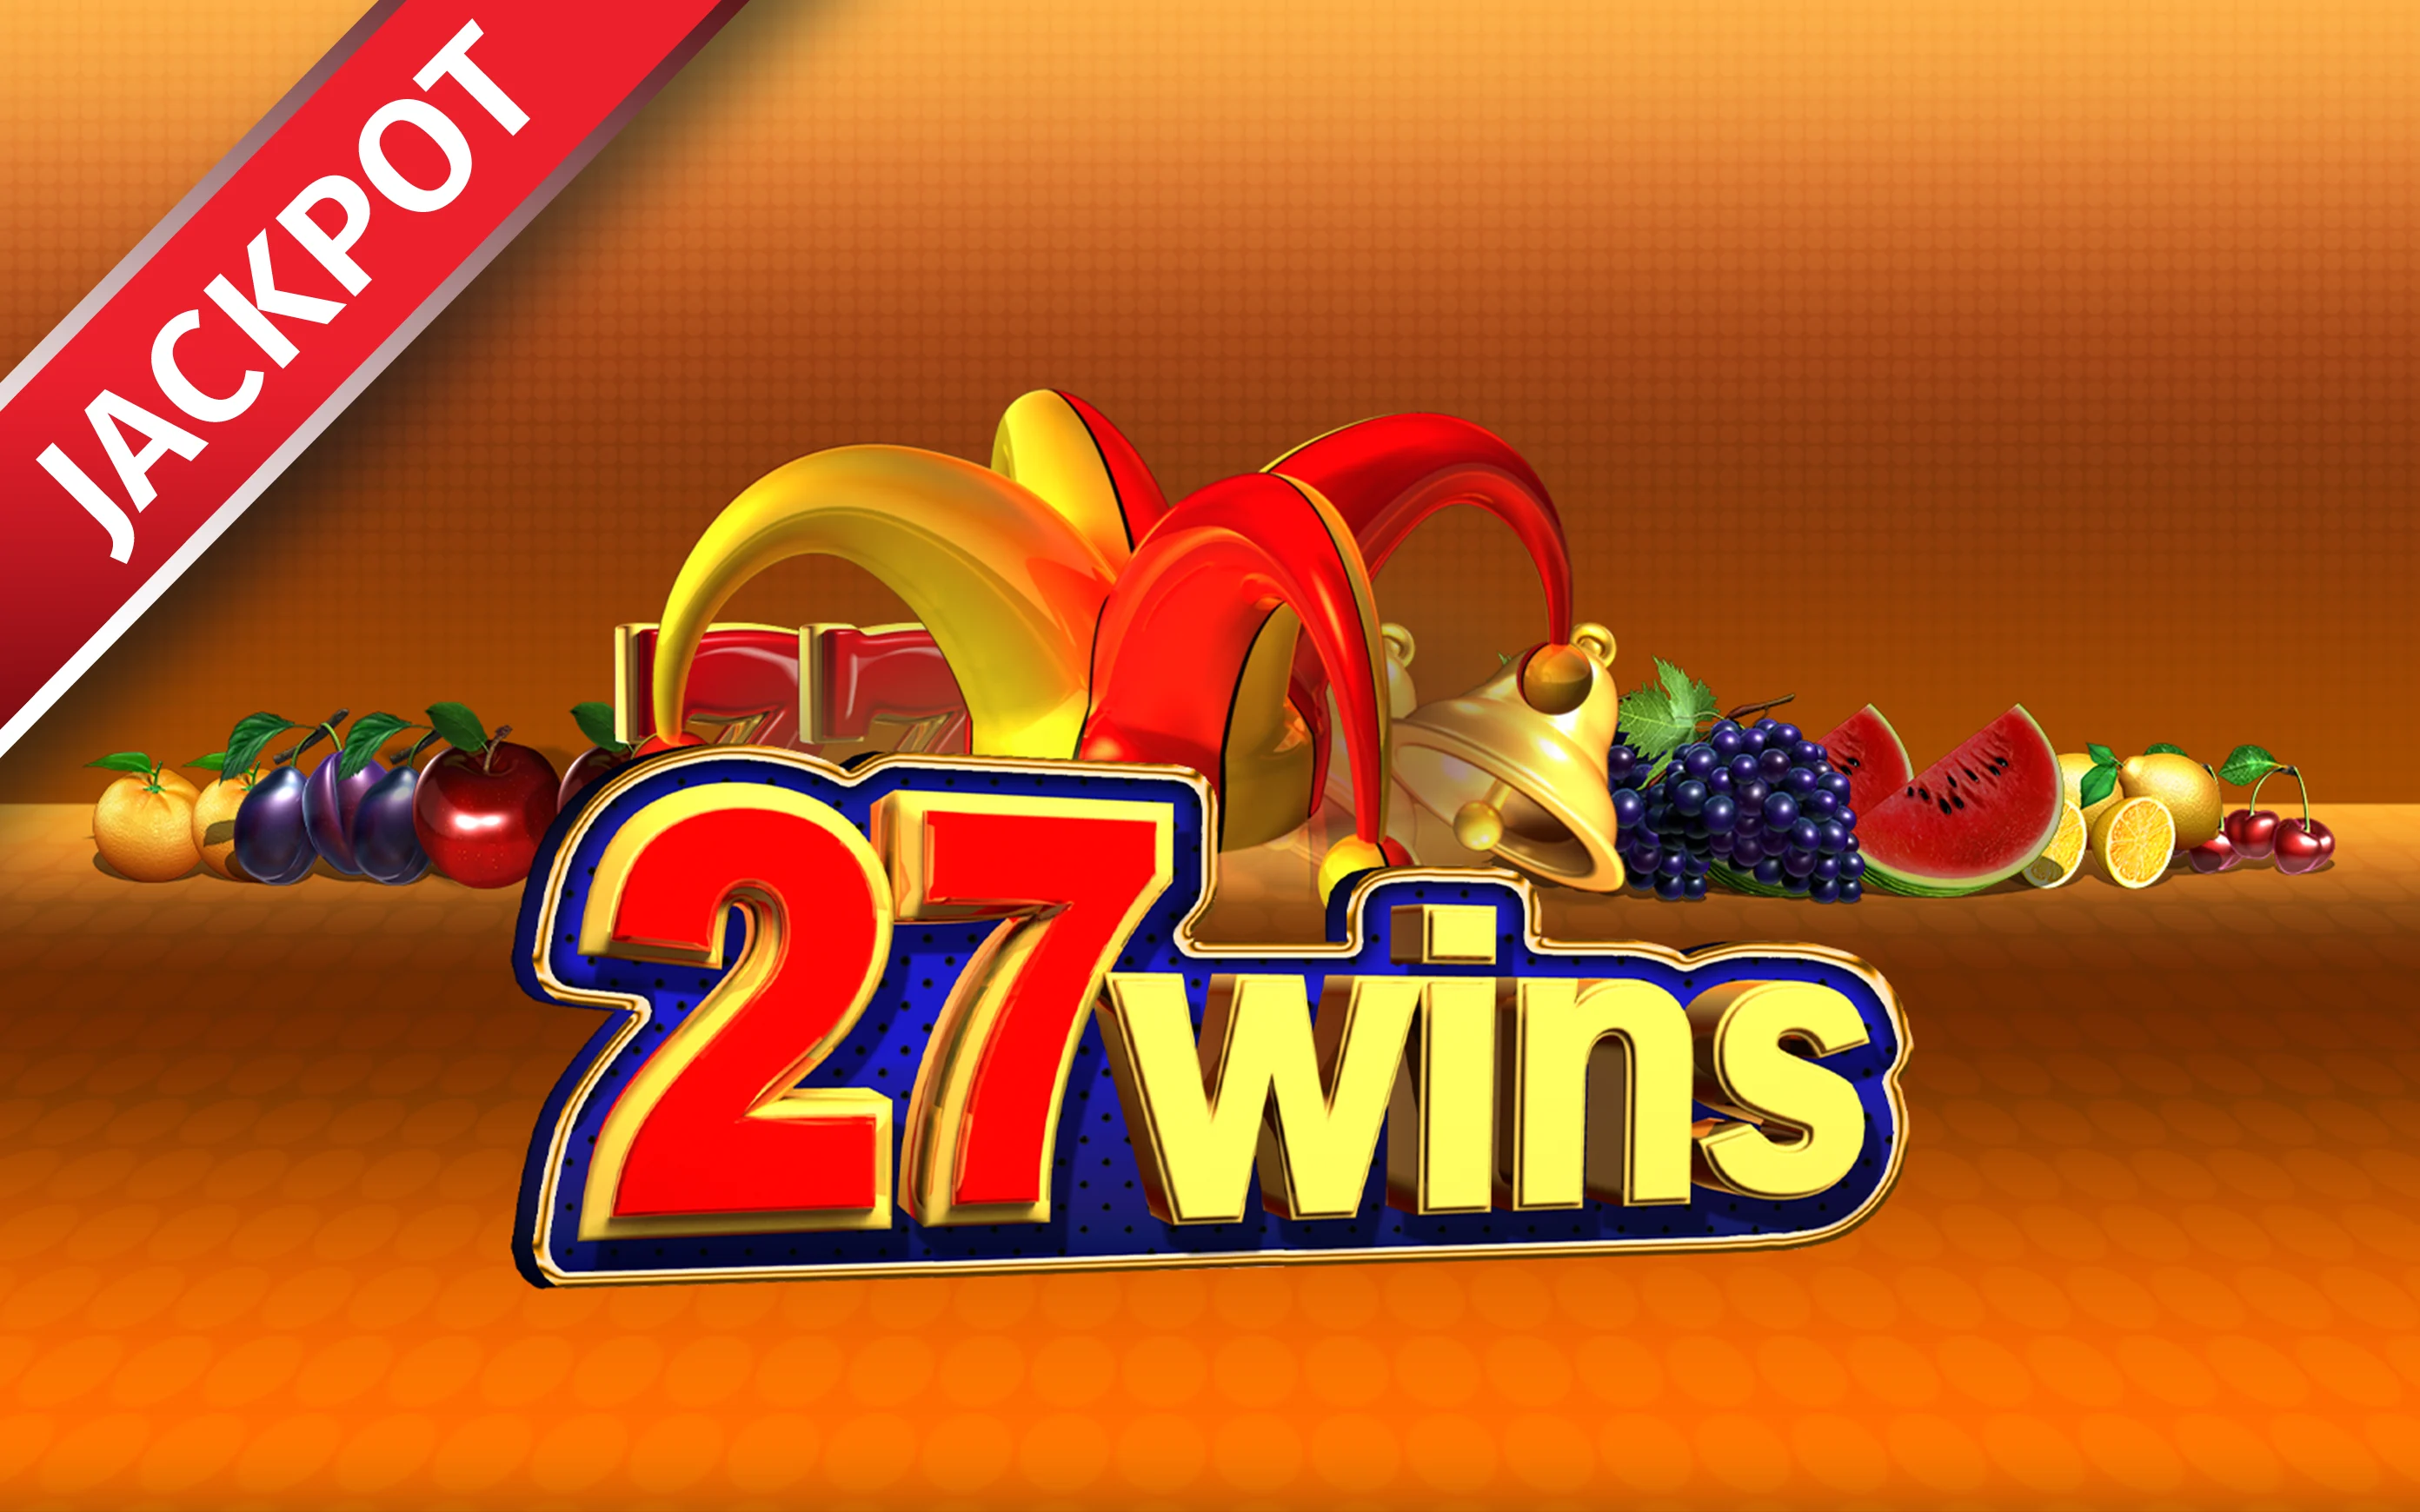 Starcasino.be online casino üzerinden 27 Wins oynayın